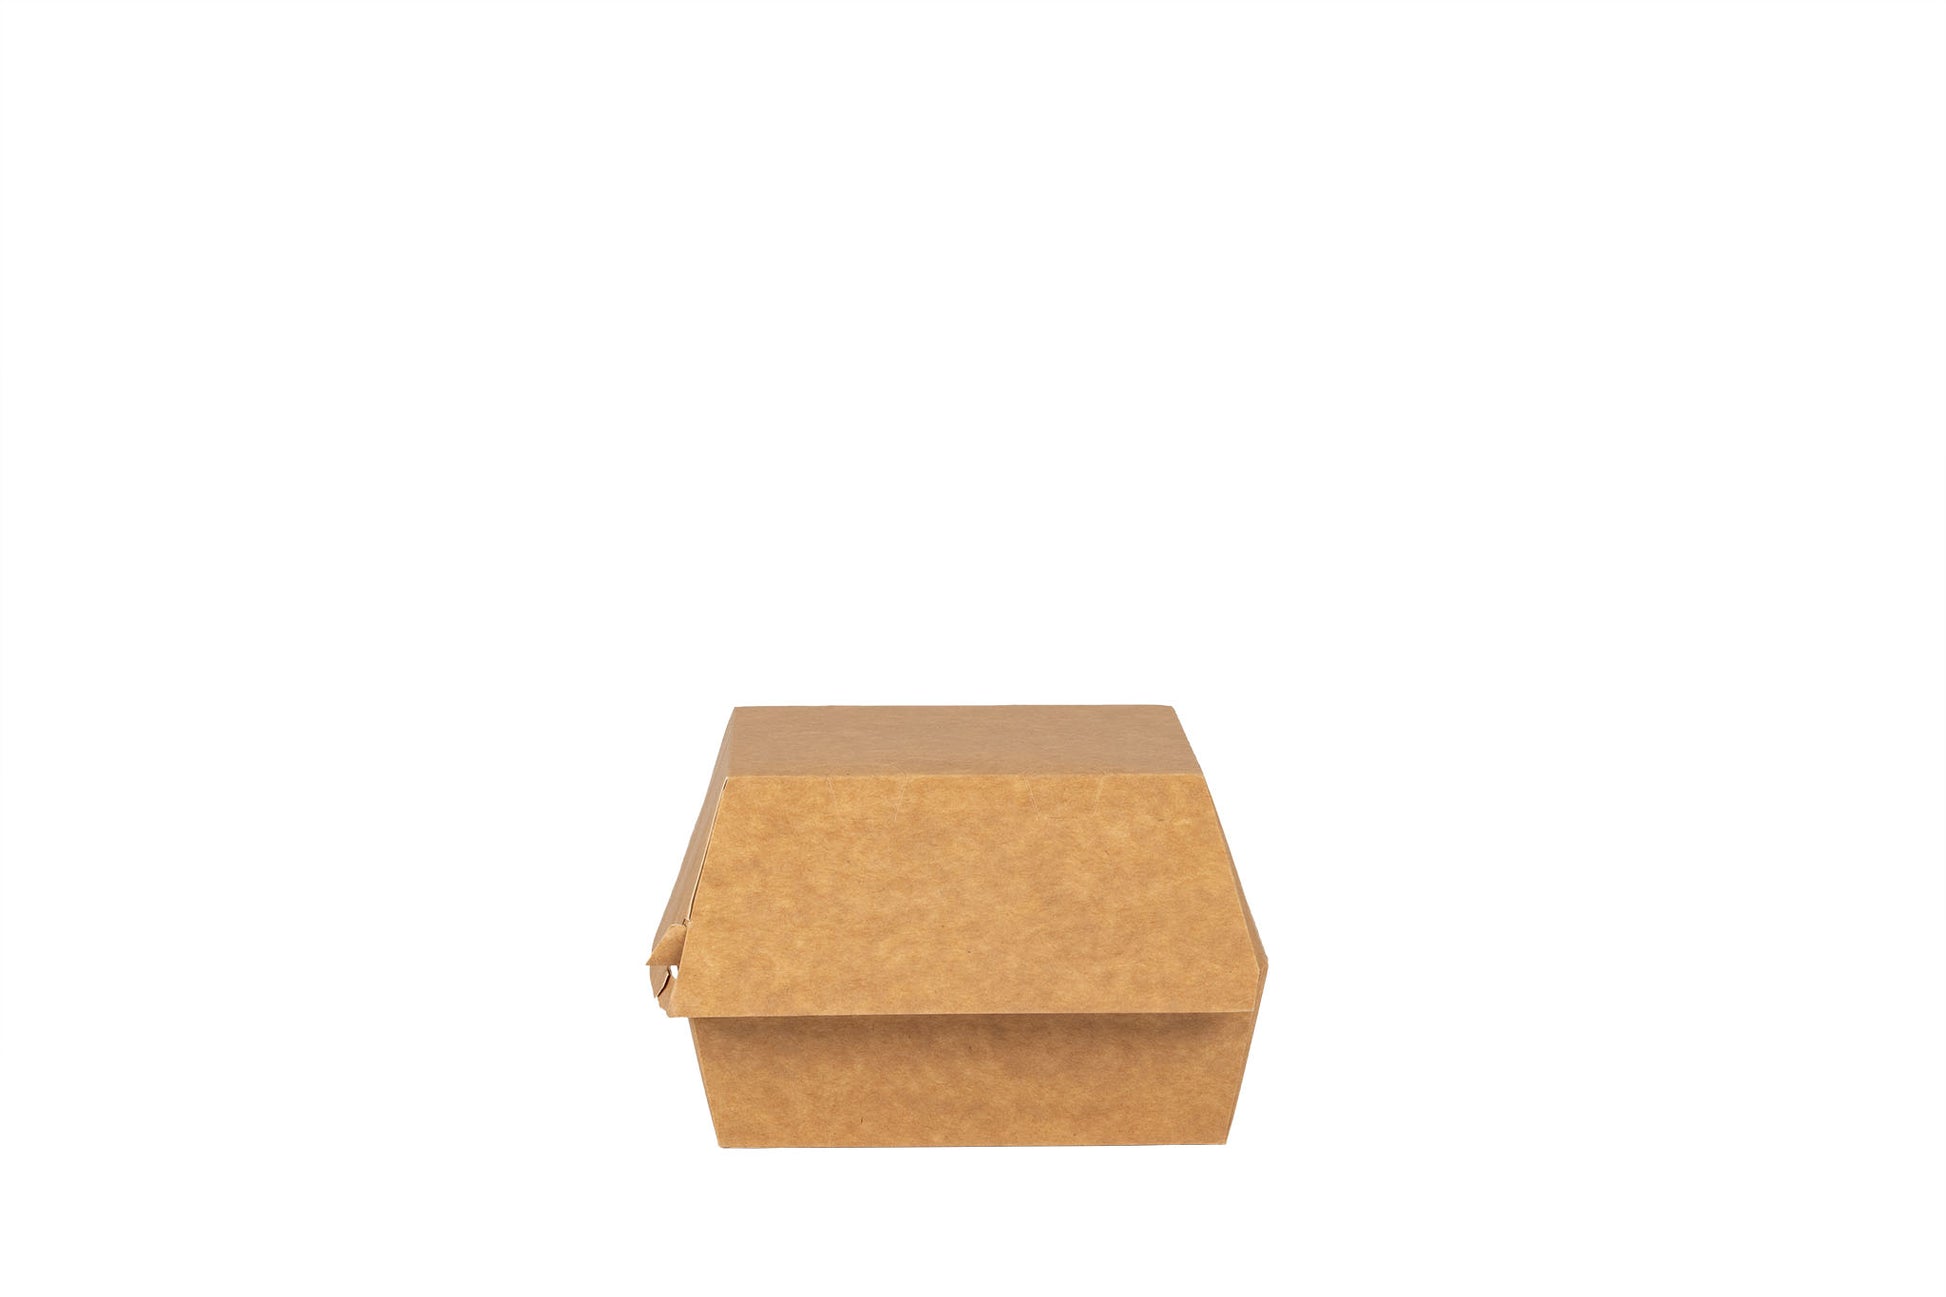 Das Bild zeigt die geschlossene Hamburger Box vertrieben von der Malik Verpackungen GmbH Hanau. Die Hamburger-Box ist aus Pappe. Die Farbe der Burger Box ist braun. Das Bild ist frontal von der Seite aufgenommen. Fotograf: Detlev Steinhilber (detis.pix)